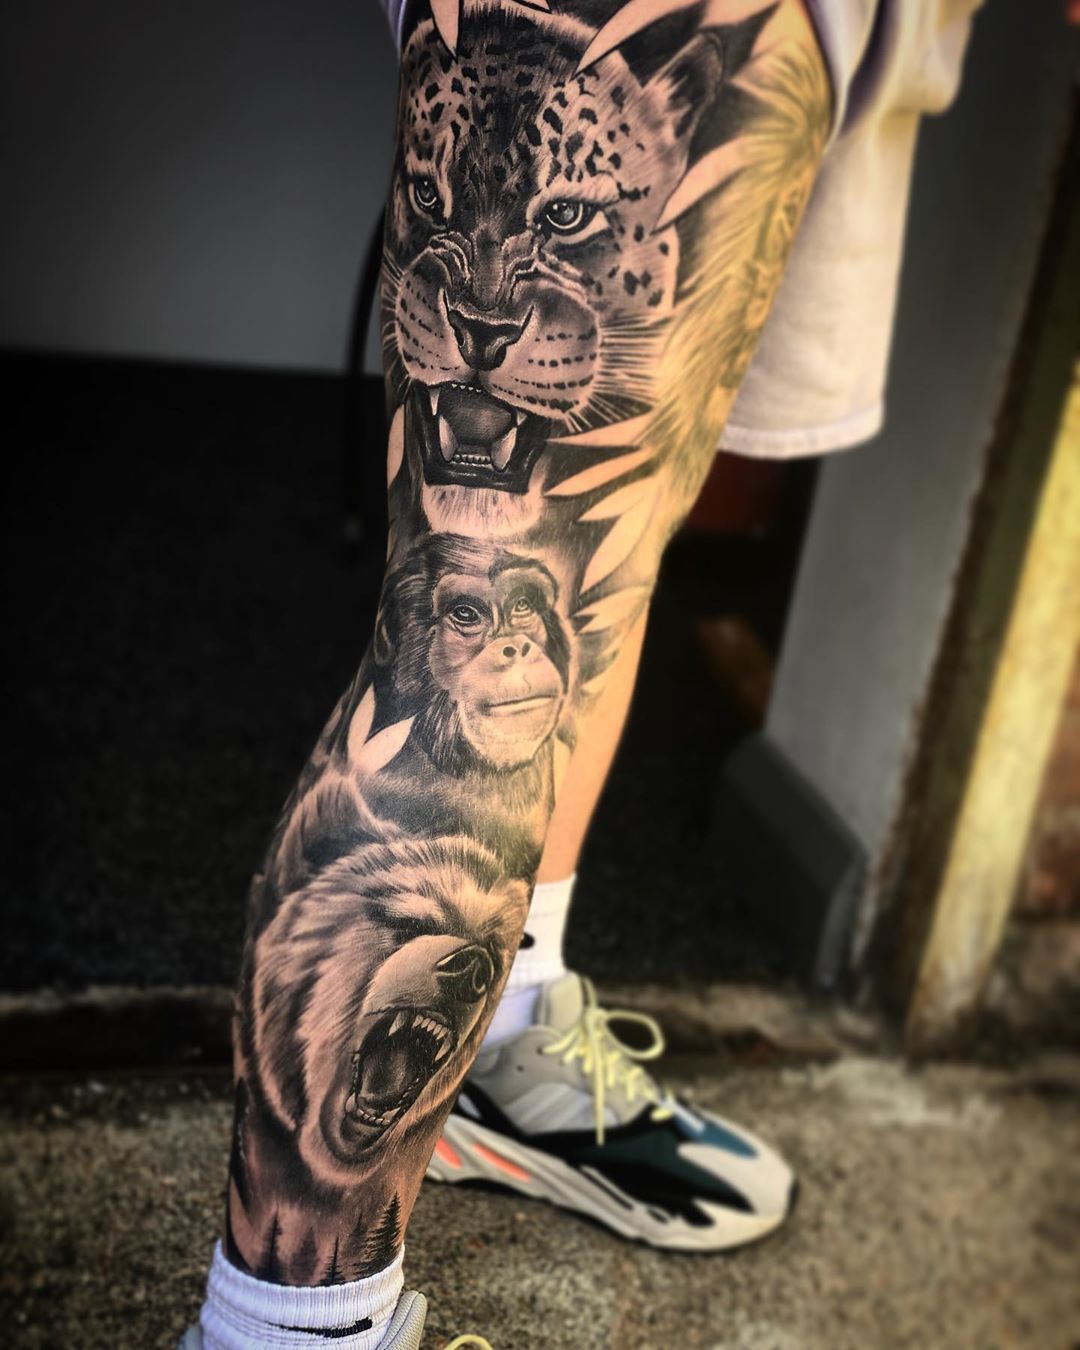 Tattoo uploaded by Joe • Jungle sleeve. #DustyBrasseur #DustyBrasseur  #watercolor #stainedglass #nature #sleeve #animals #monkey #venusflytrap  #panda #leopard #frog • Tattoodo